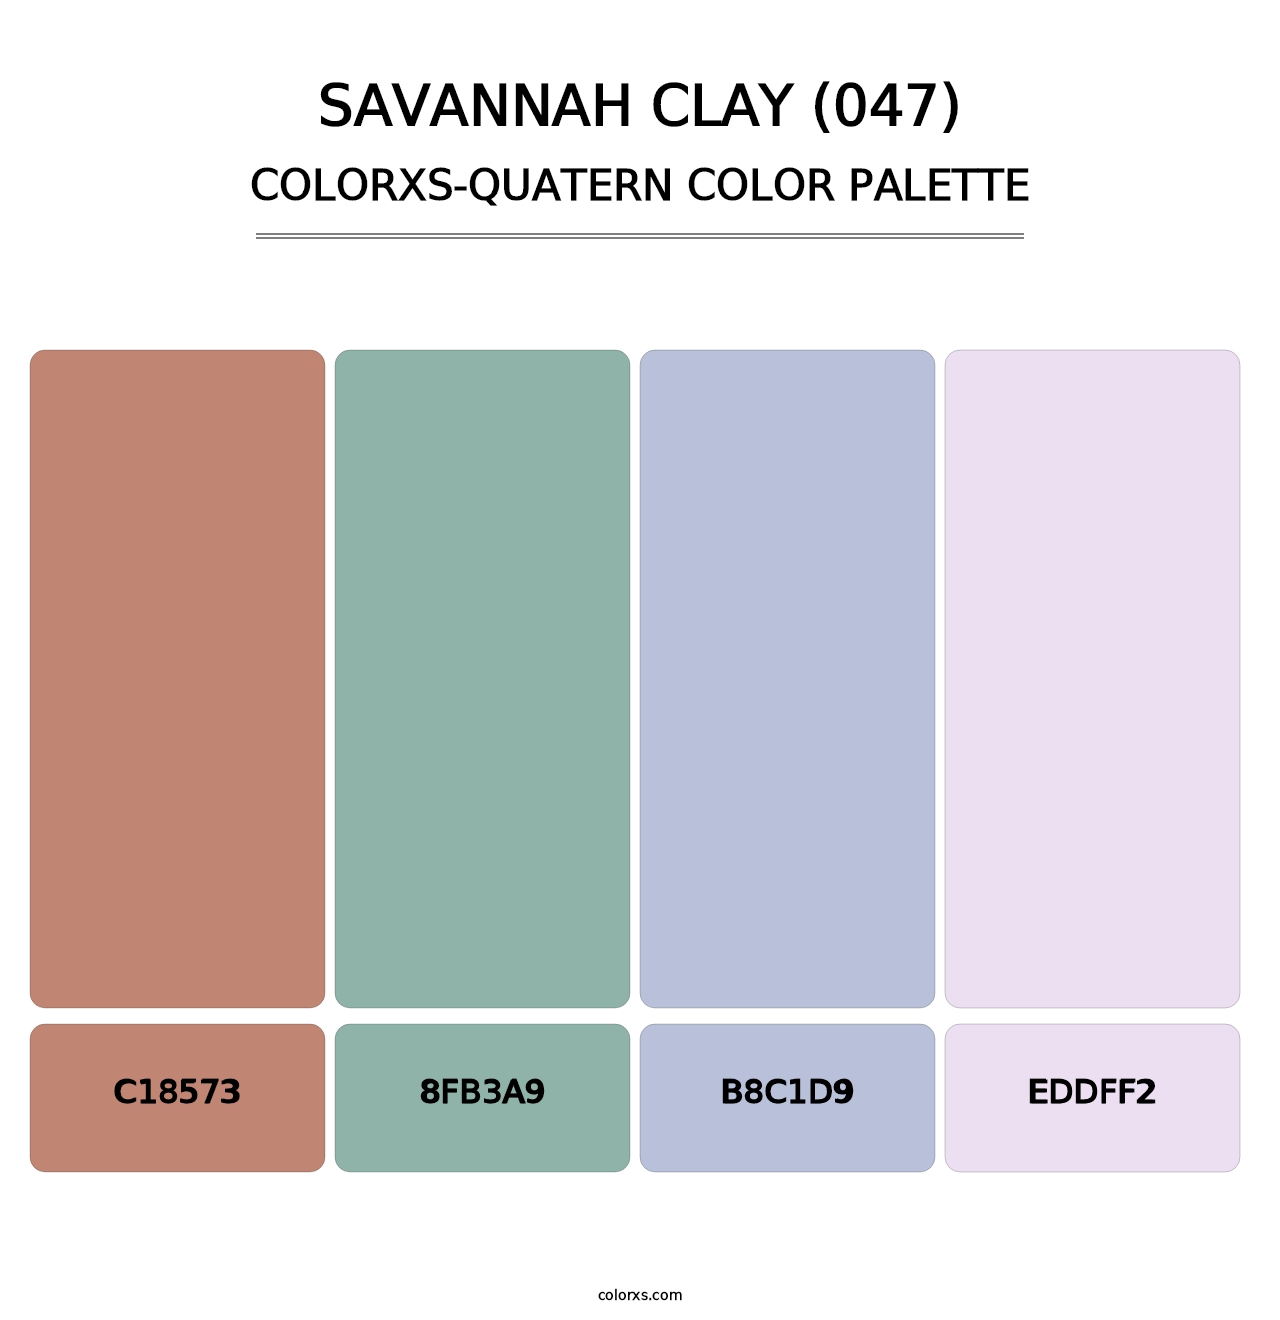 Savannah Clay (047) - Colorxs Quatern Palette